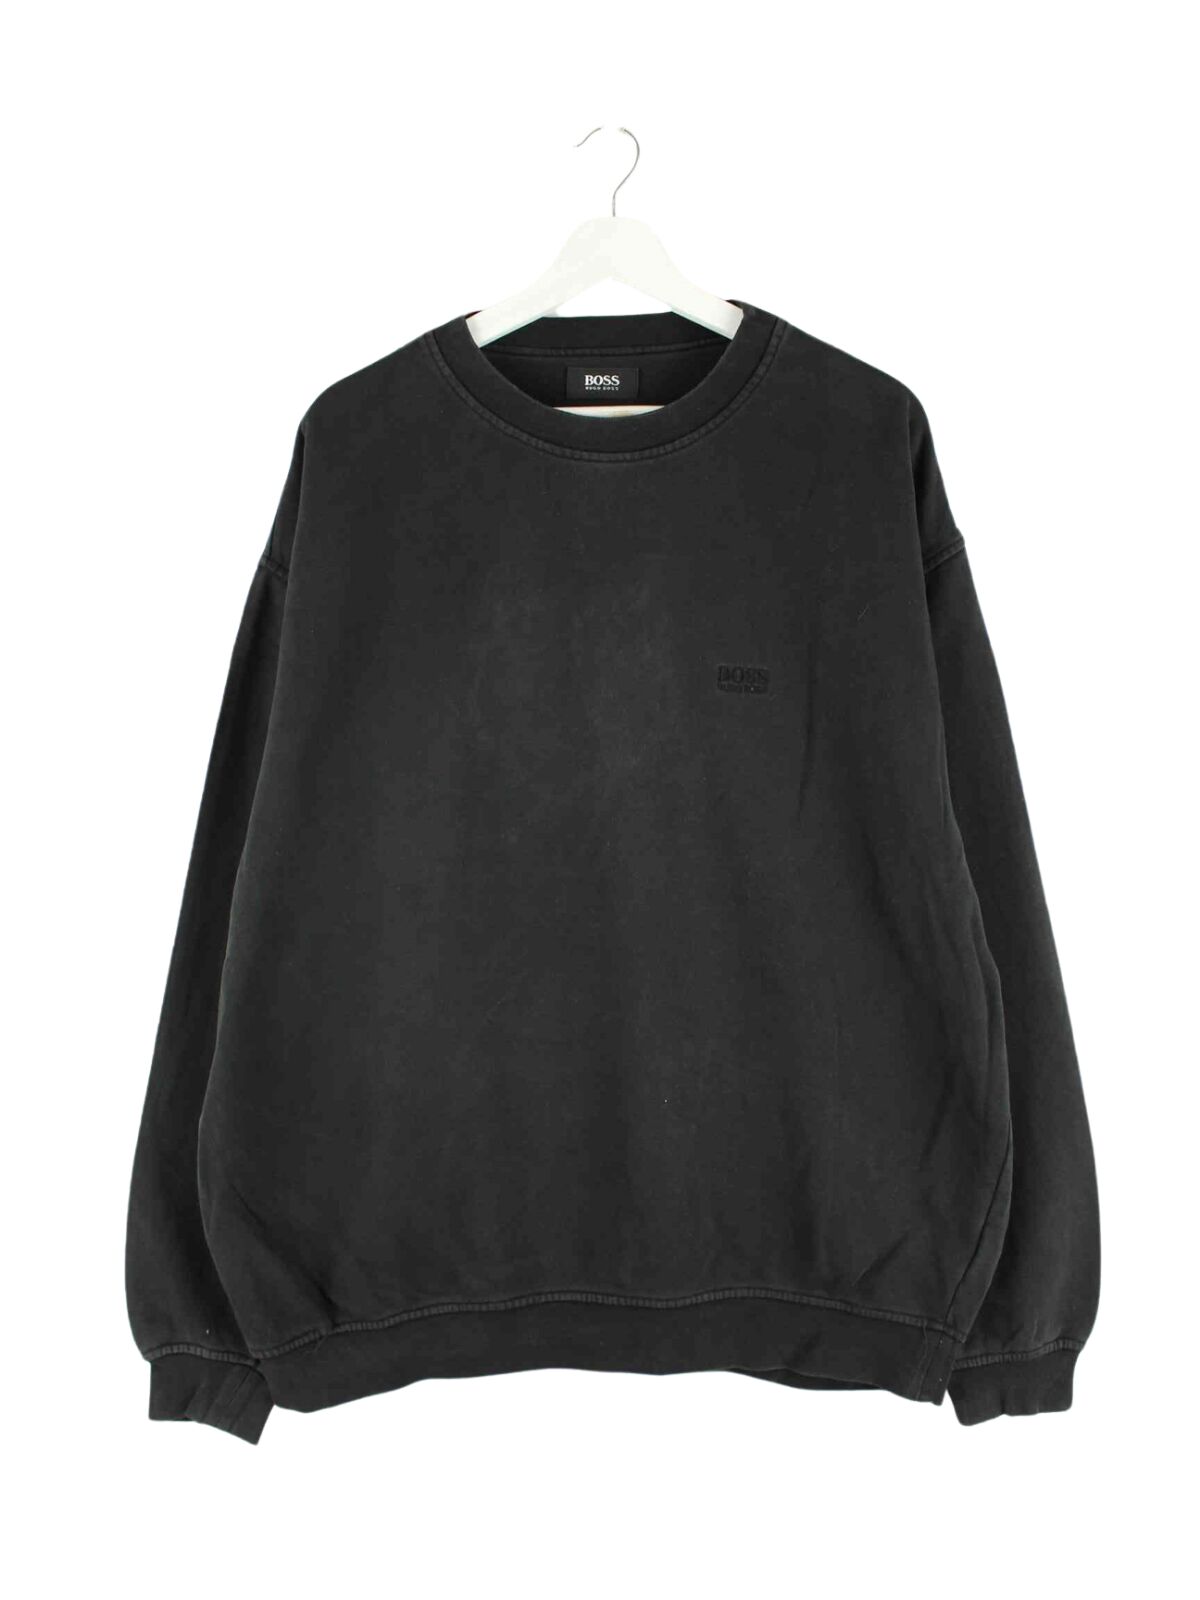 Hugo Boss Basic Sweater Schwarz XL (front image)